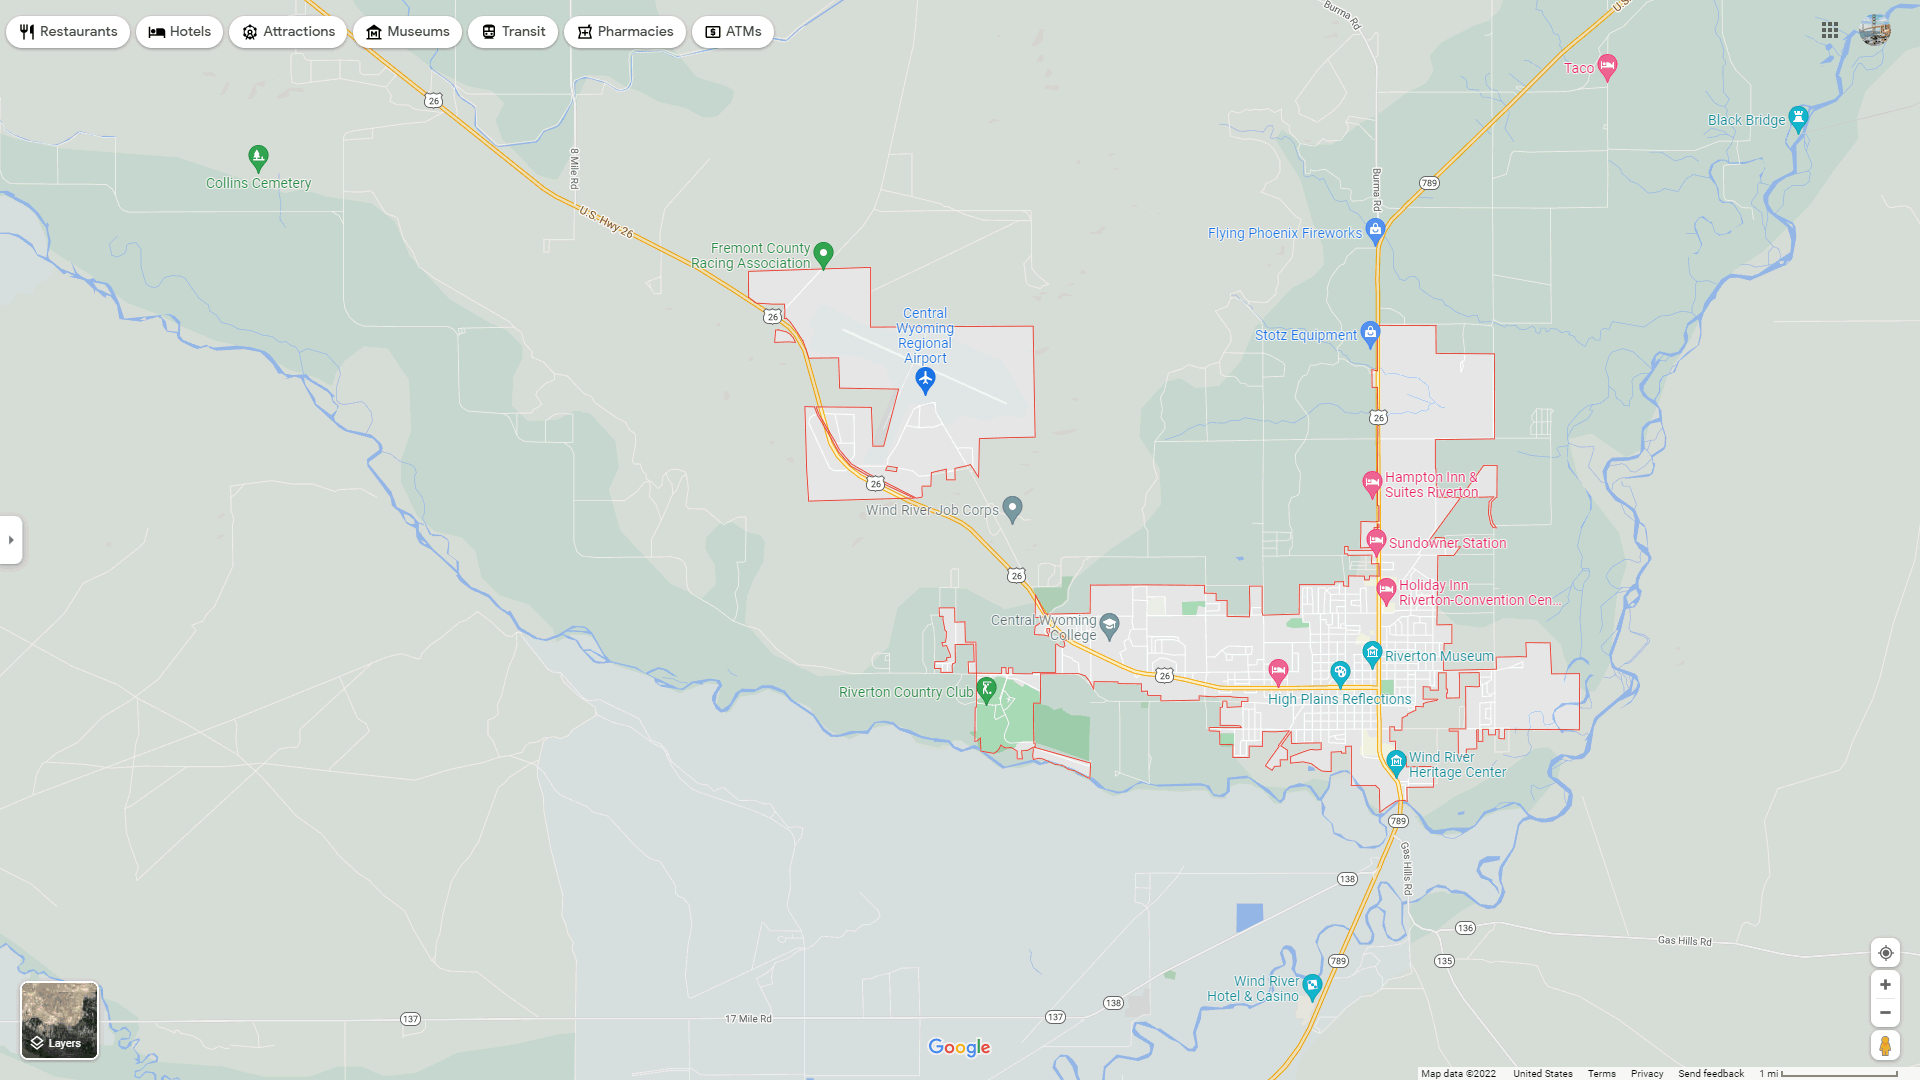 Riverton map